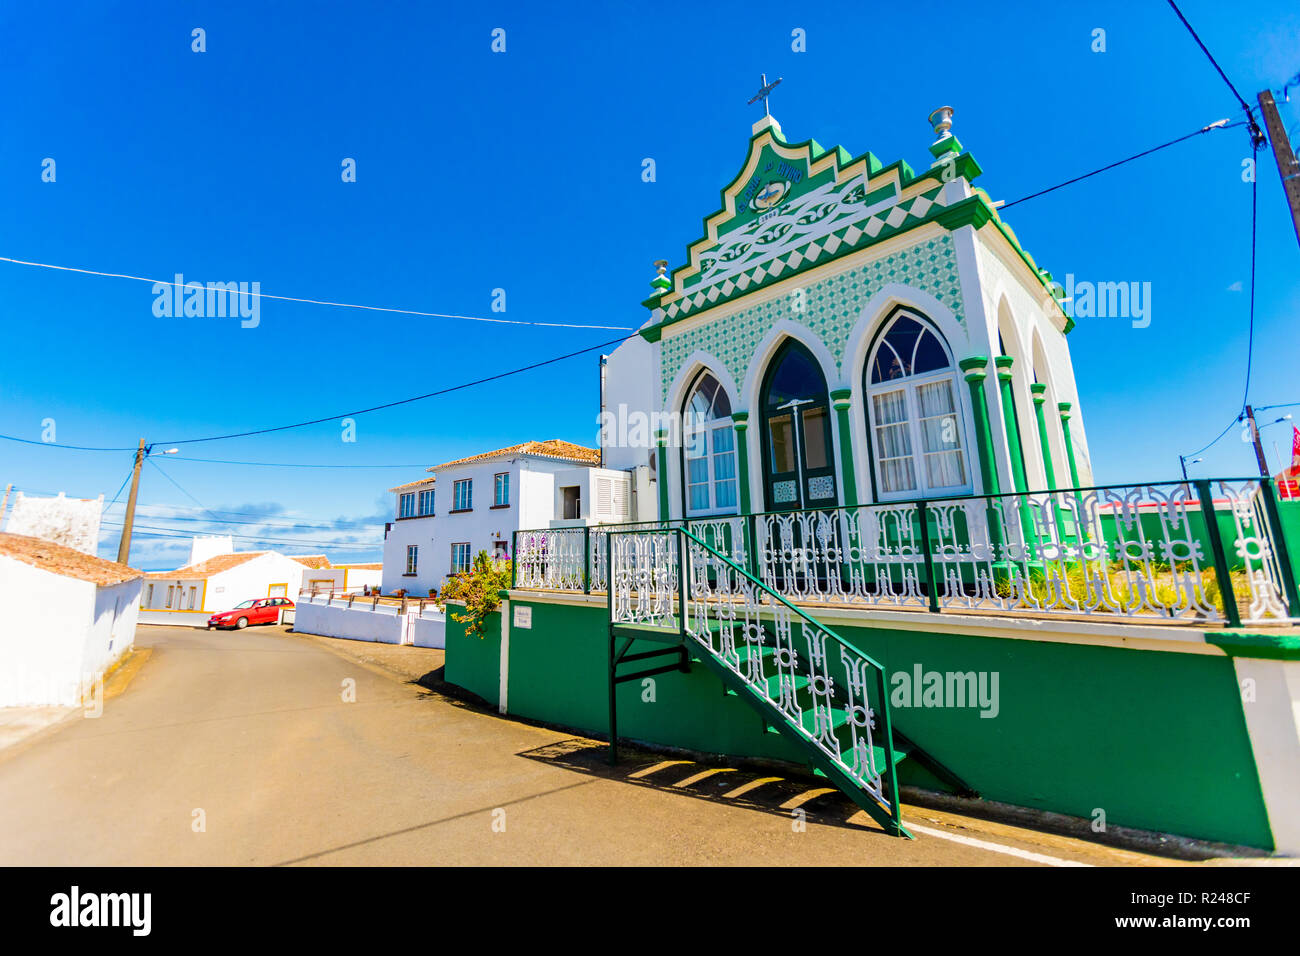 Gli edifici colorati nella cittadina chiamata Sao Mateus abitato attorno all'isola Terceira, Azzorre, Portogallo, Atlantico, Europa Foto Stock